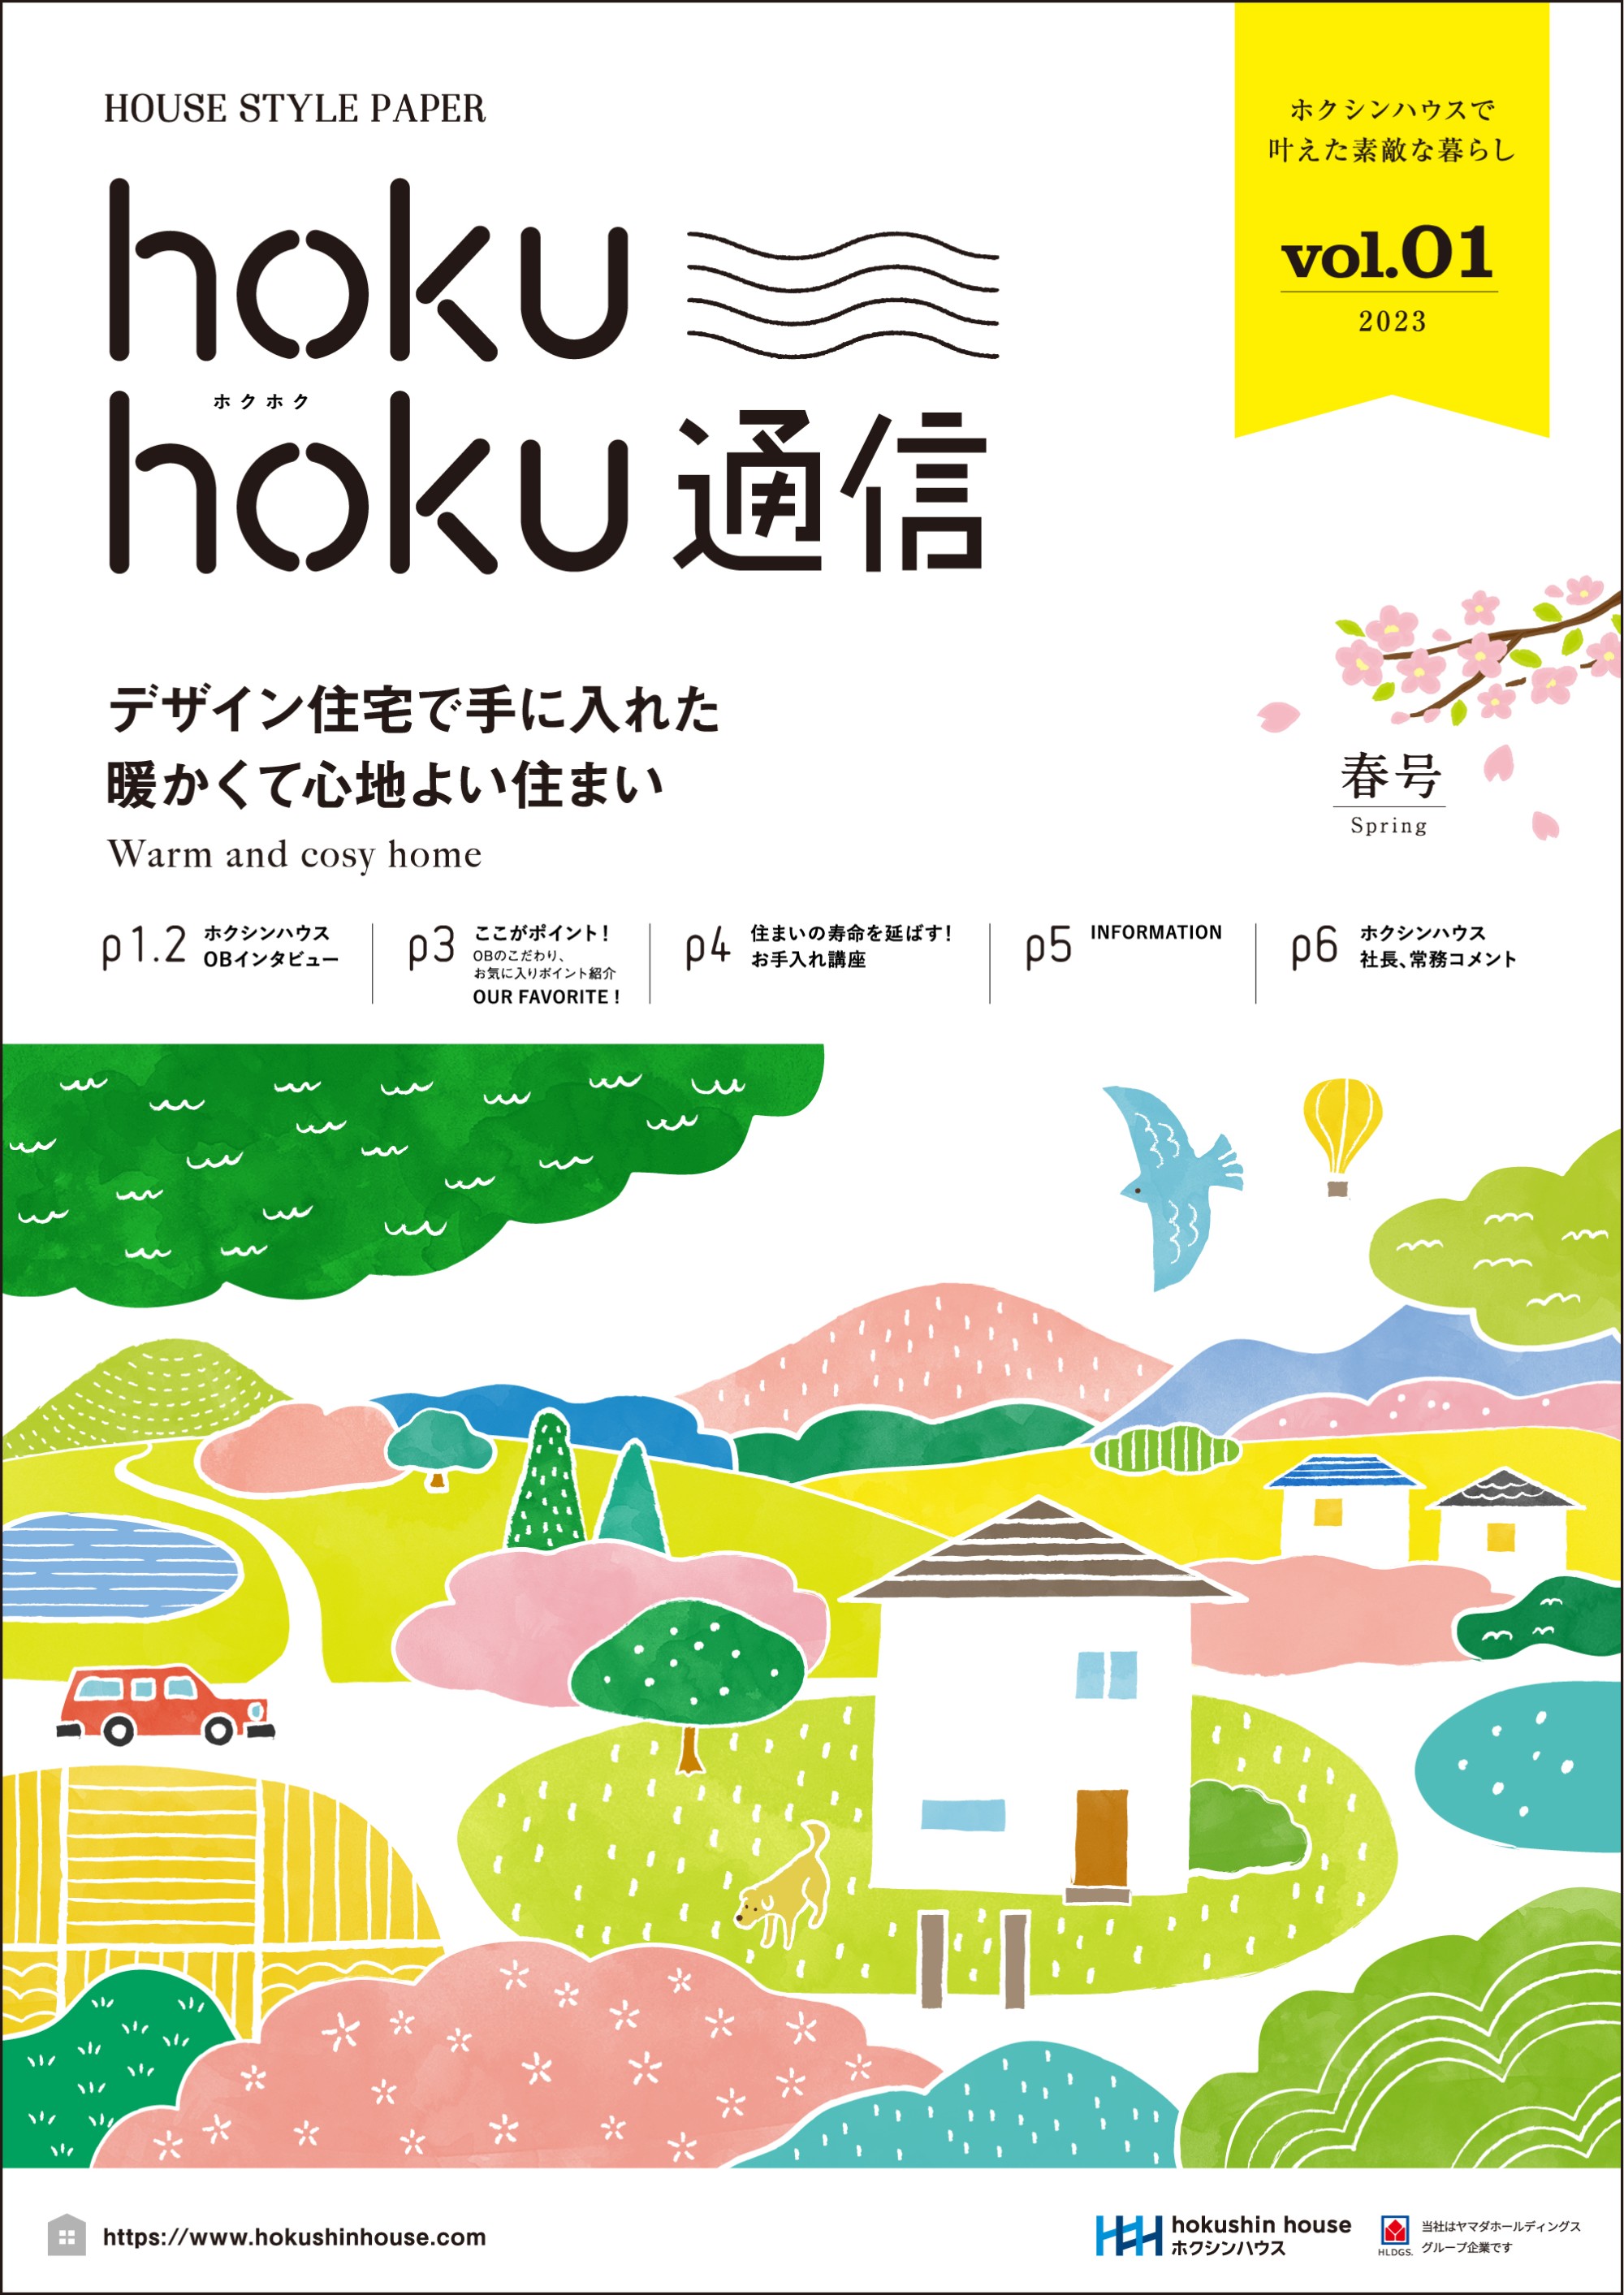 オーナーさまのための季刊誌「huku hoku 通信」vol.1を発行いたしました。